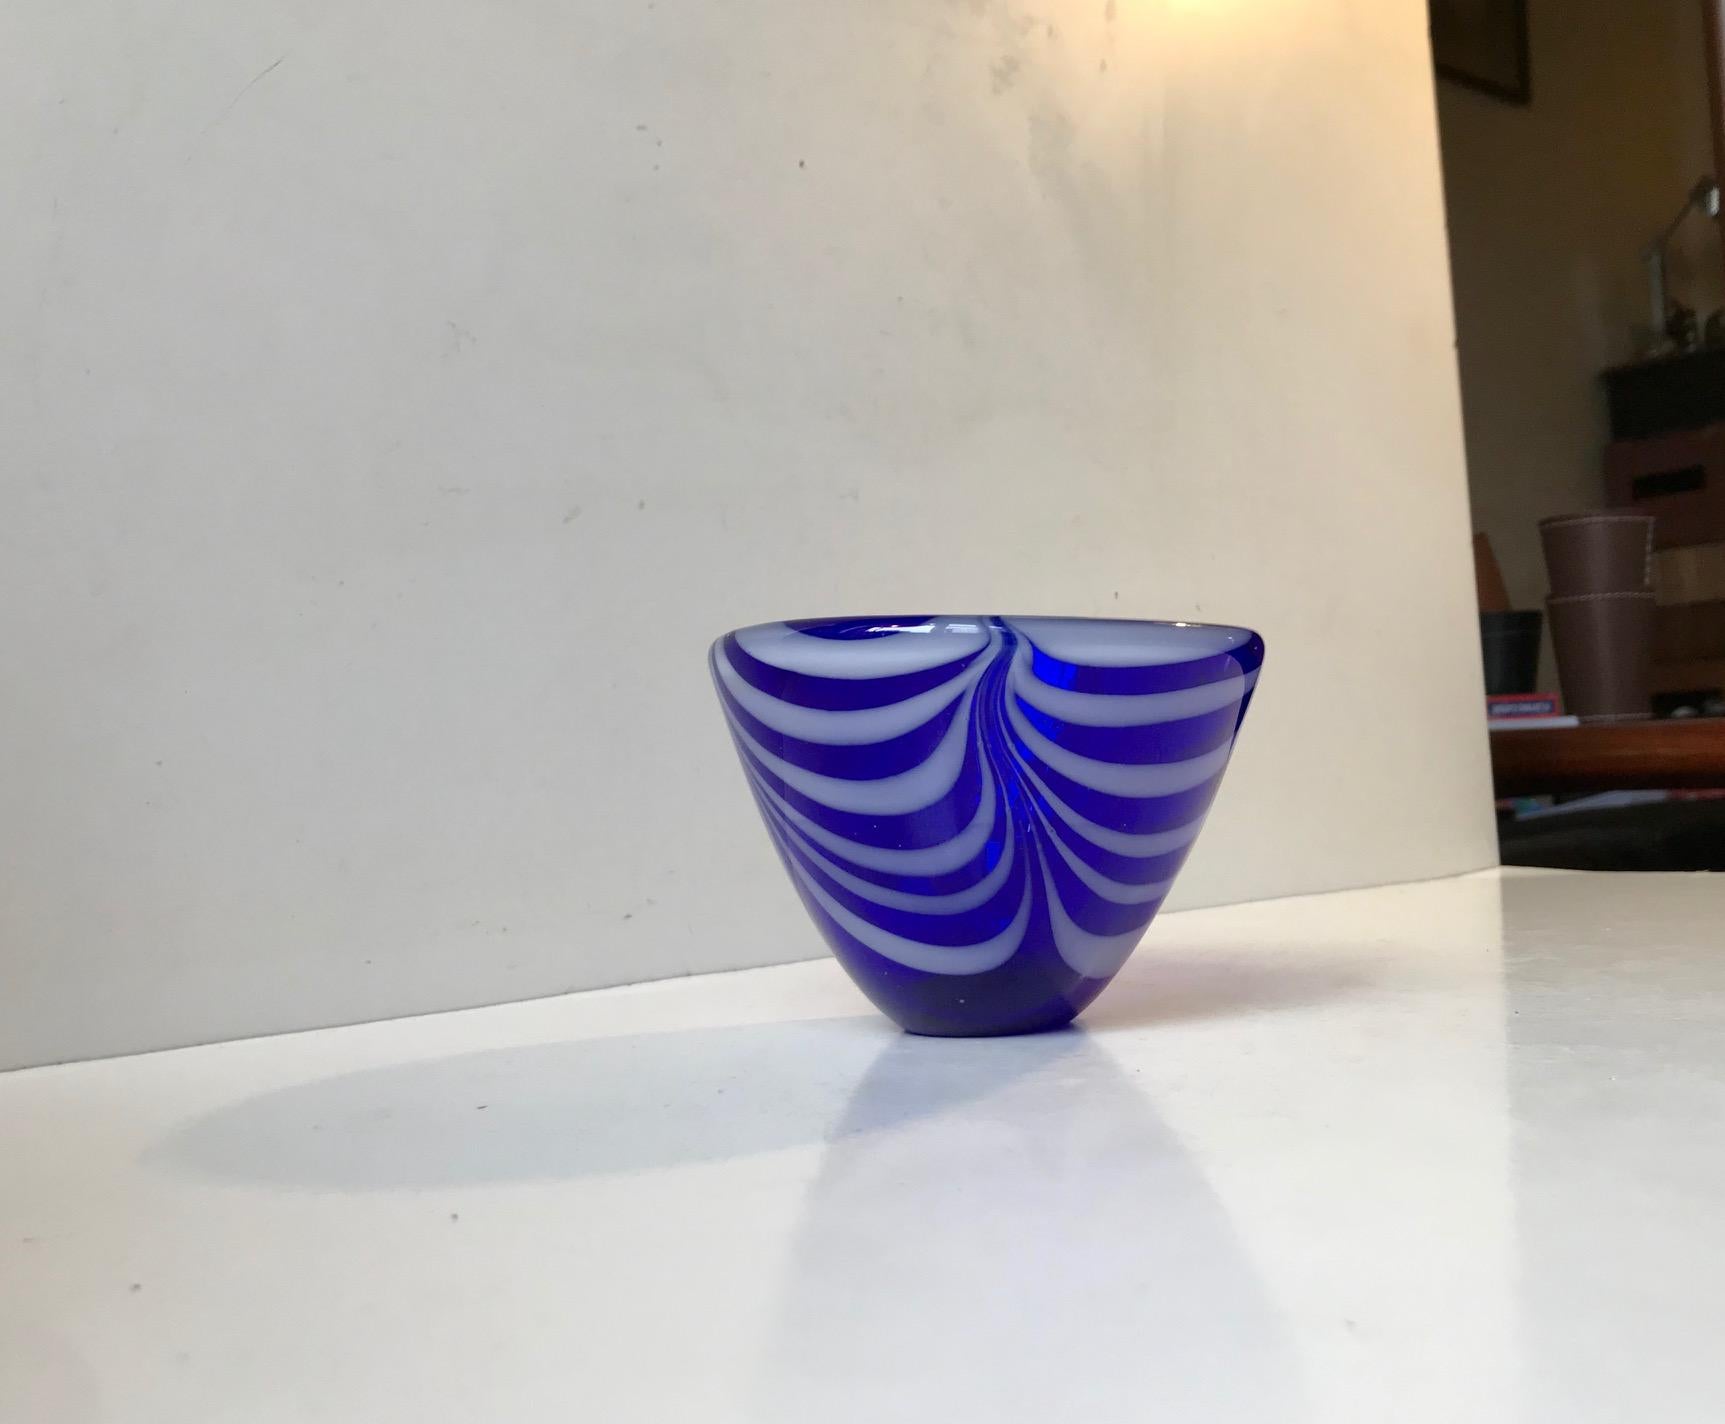 Bol conique épais en verre bleu cobalt soufflé à la main avec décor blanc en spirale/ tourbillon en verre opaque. Fabriqué par Kosta Boda et conçu par Vicke Lindstrand en Suède dans les années 1960.